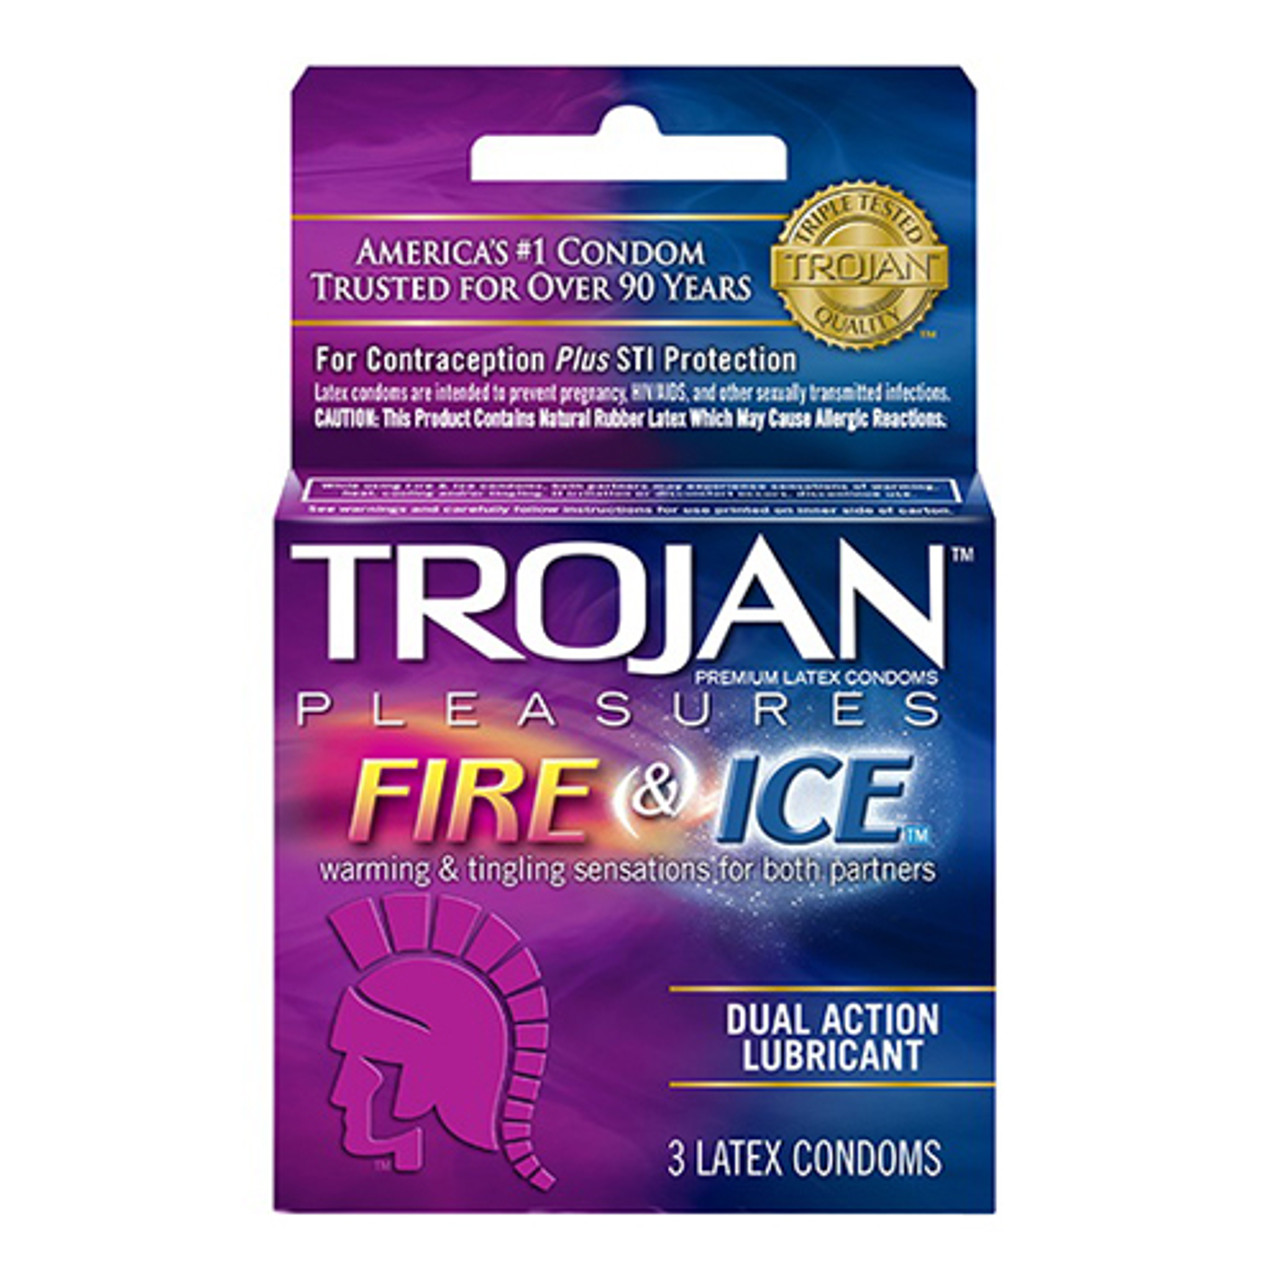 Prime Retardante Preservativos Retardant Latex Condoms with Delay  Lubricant, 3 boxes with 3 condoms ea (9